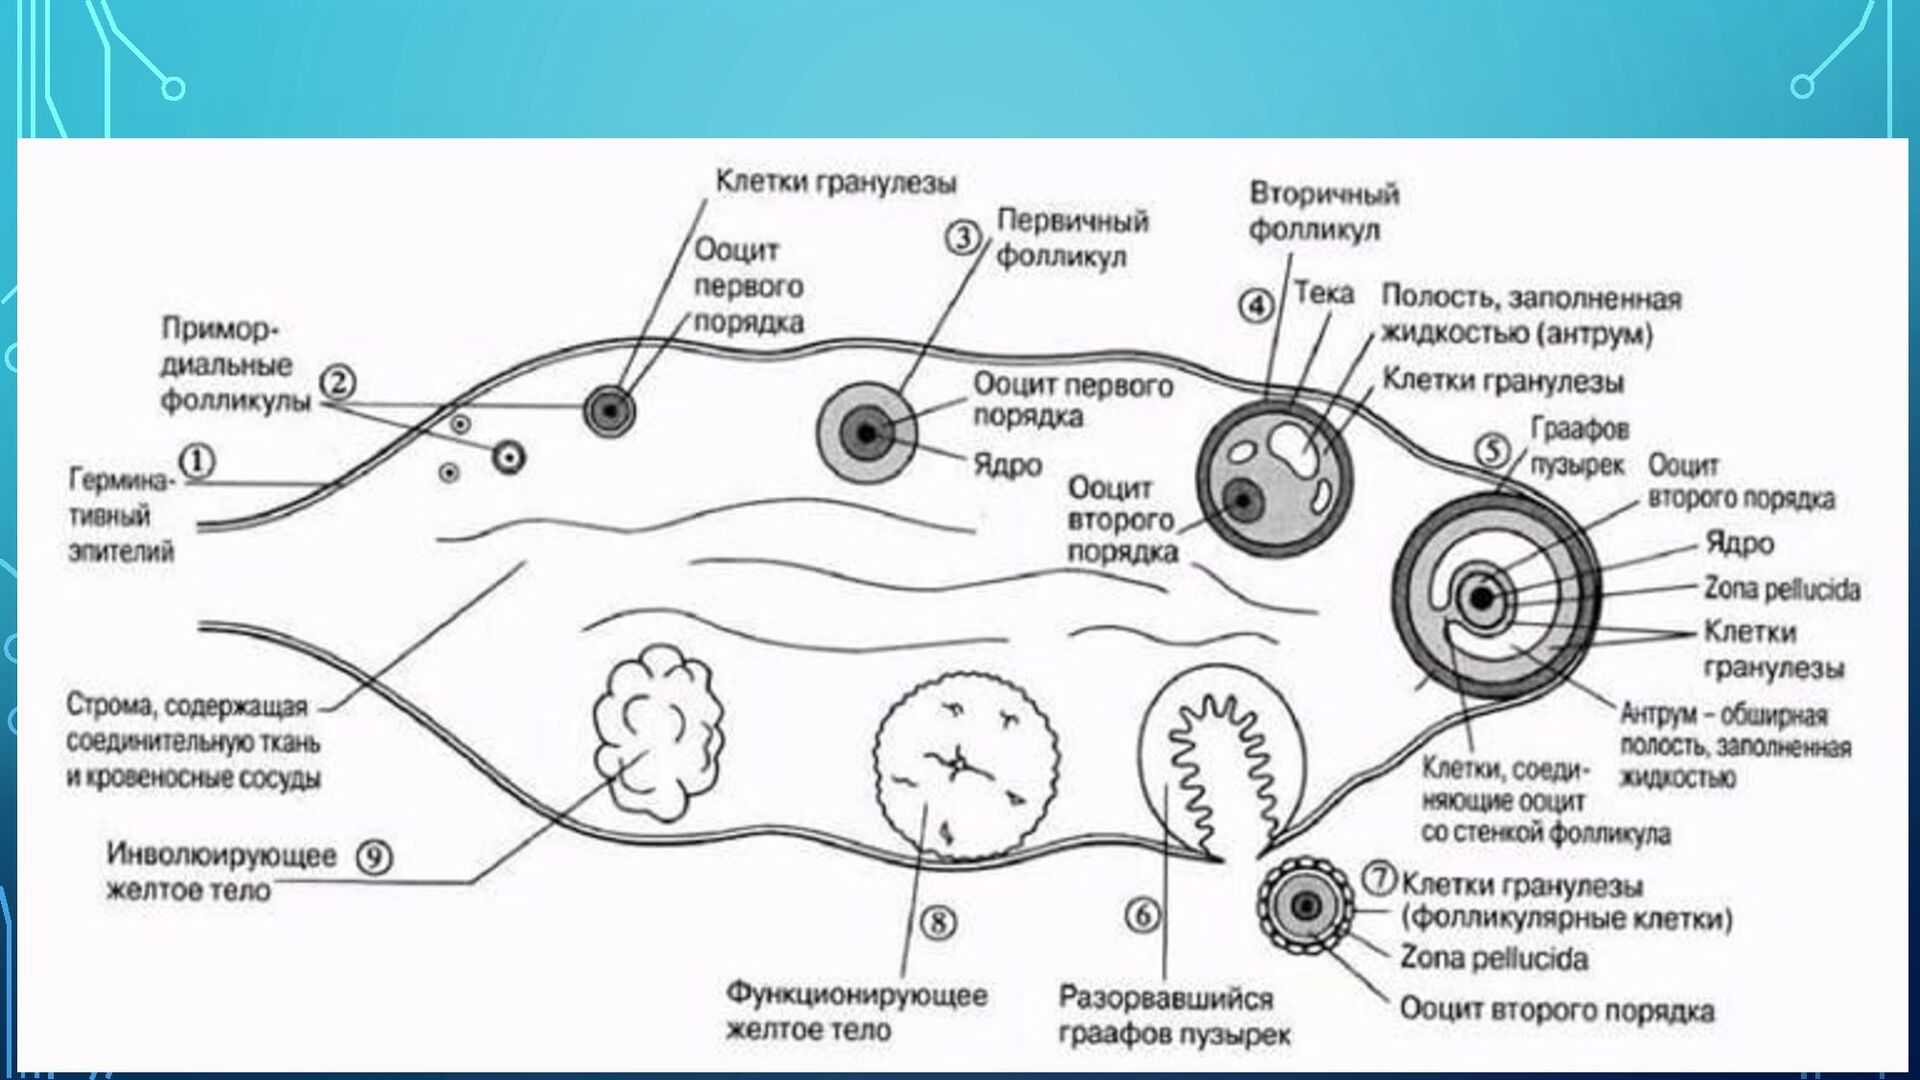 Женский половой орган млекопитающих. Схема оплодотворения яйцеклетки. Схема созревания яйцеклетки в яичнике. Схема оплодотворения яйцеклетки у человека. Фазы оплодотворения схема.